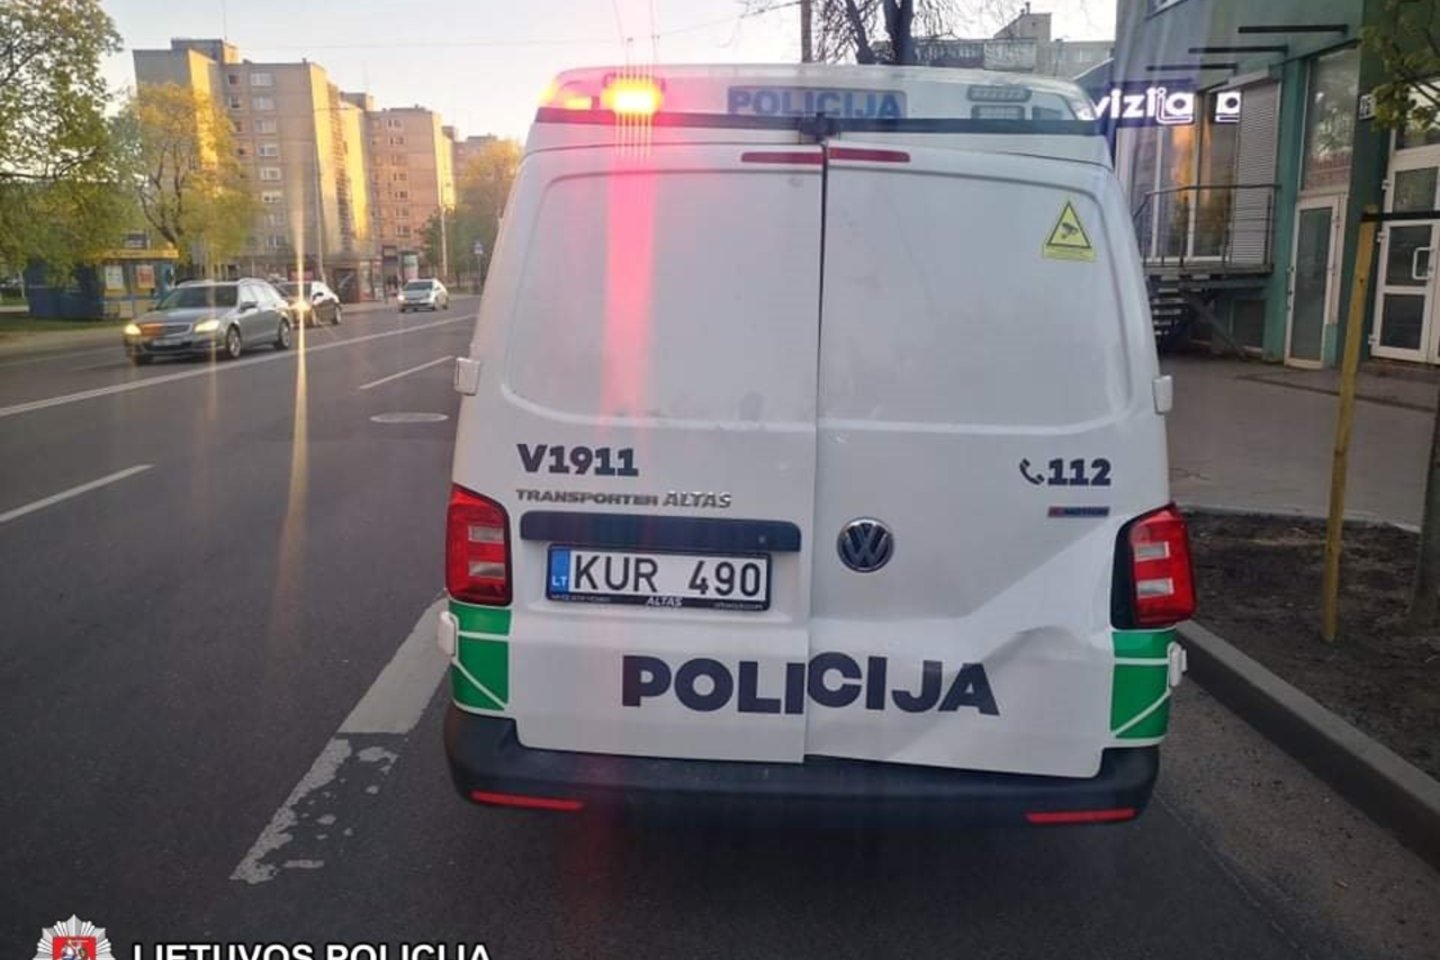  Vilniuje vyko gaudynės tarsi Holivudo trileryje: apdaužytas ir policijos automobilis.<br> Vilniaus apskrities VPK nuotr.